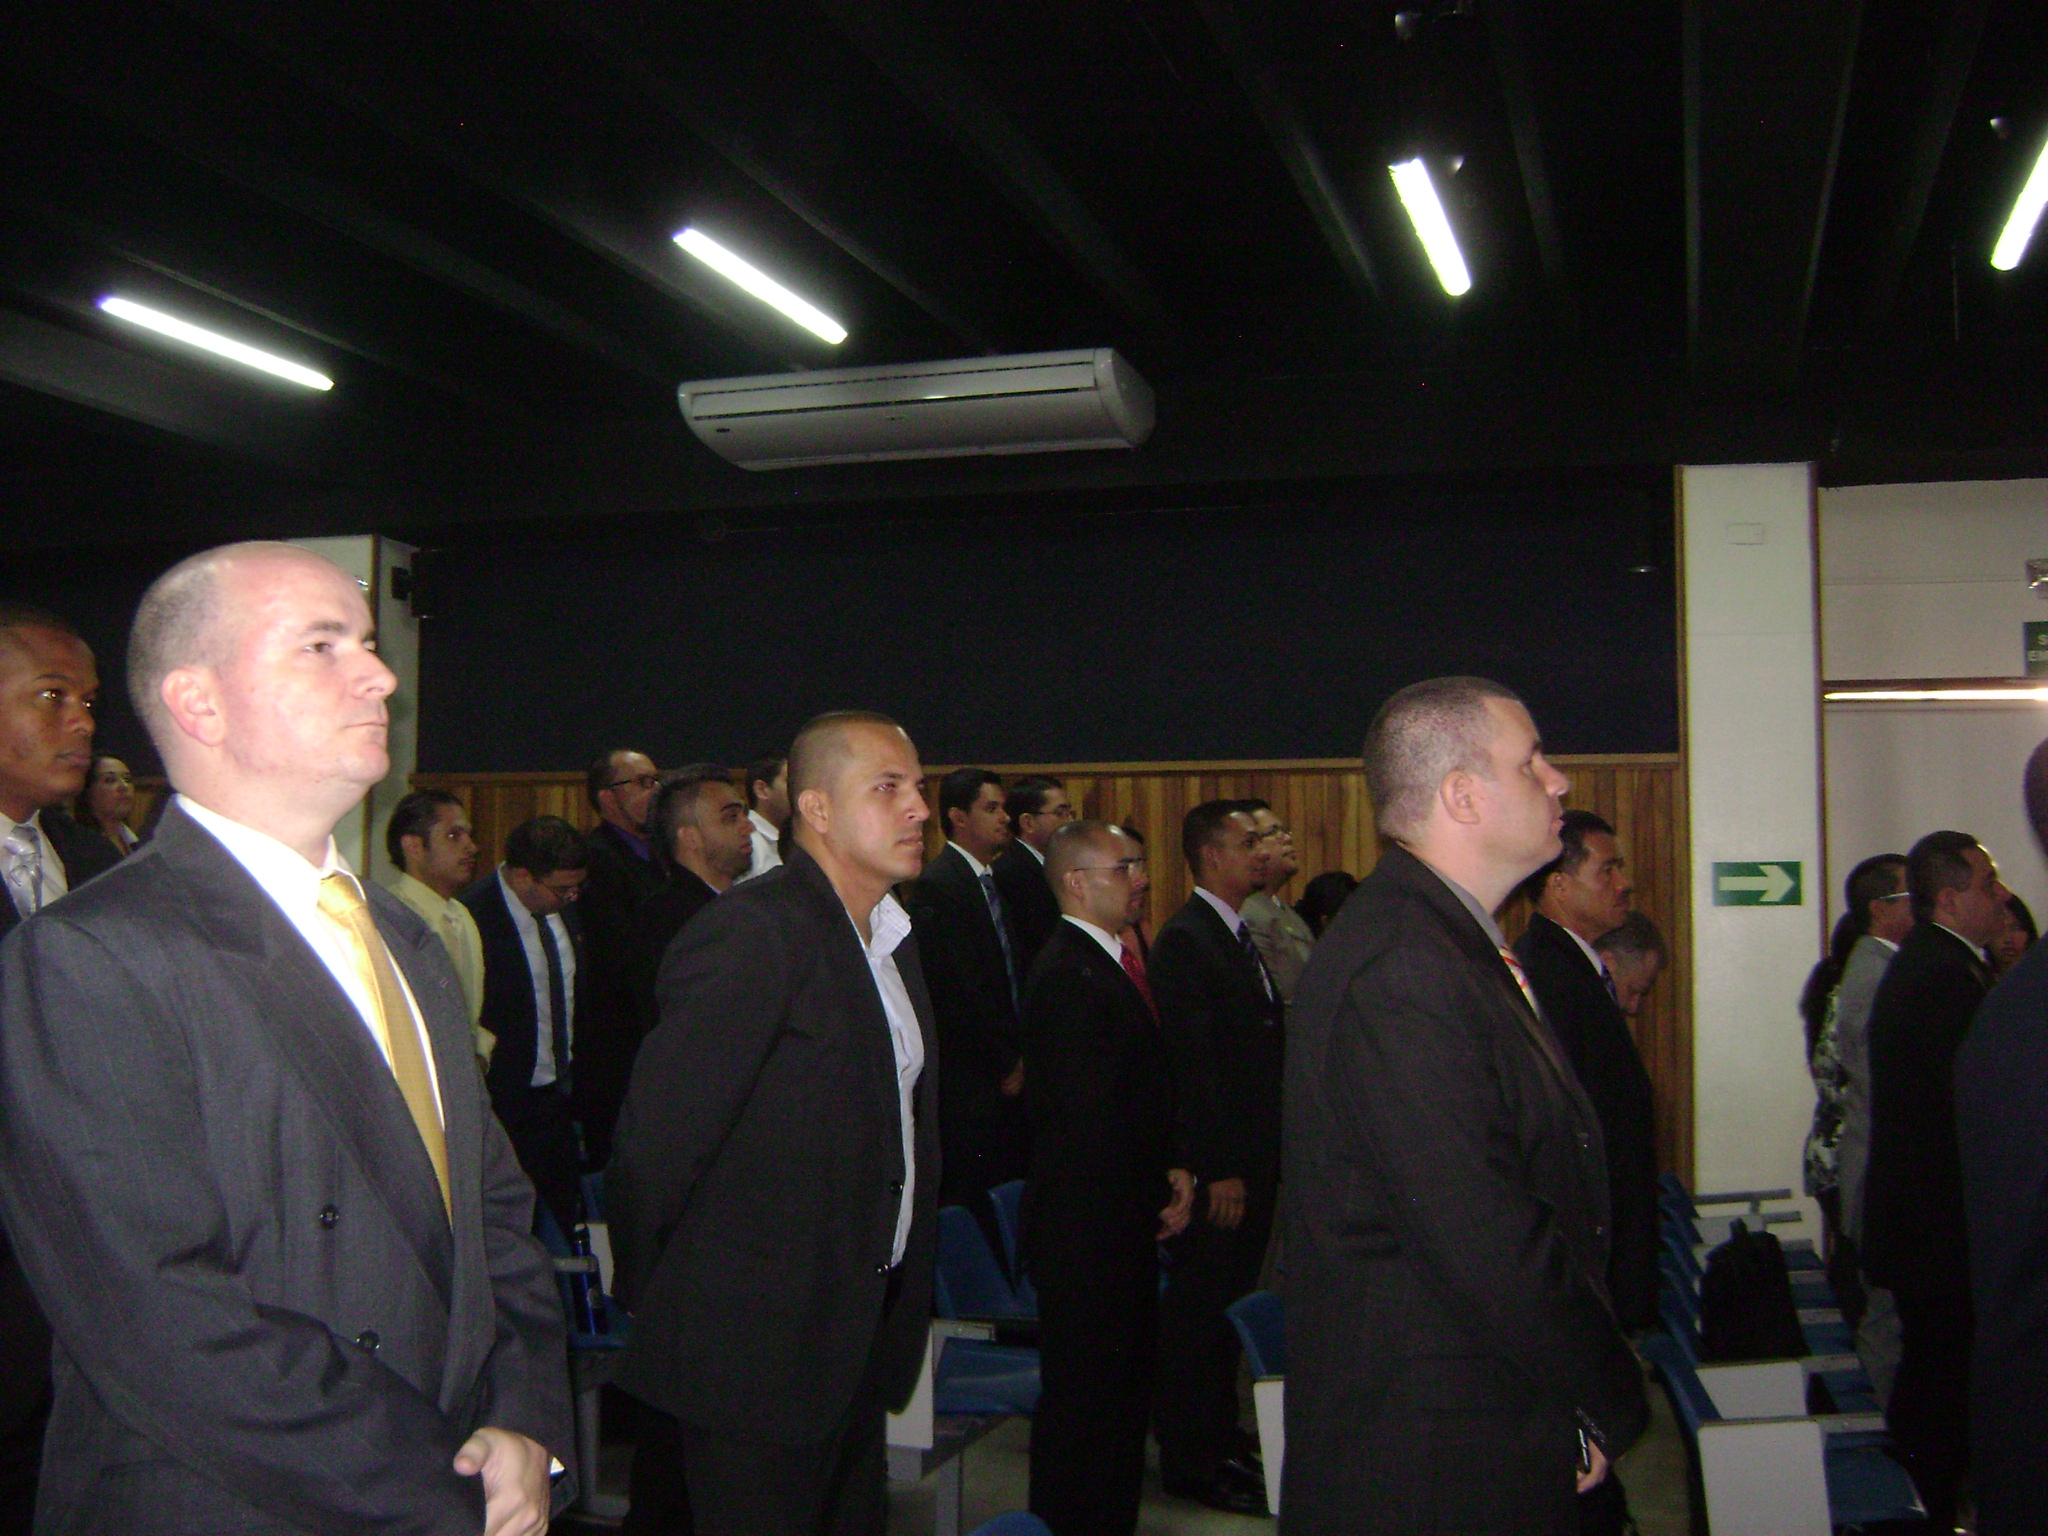 Inauguración del Simposio Regional de Seguridad Cibernetica, organizada e impartida con la participación del Comité Interamericano Contra el Terrorismo Cibernetico (CICTE) de la OEA(30 de septiembre de 2013)